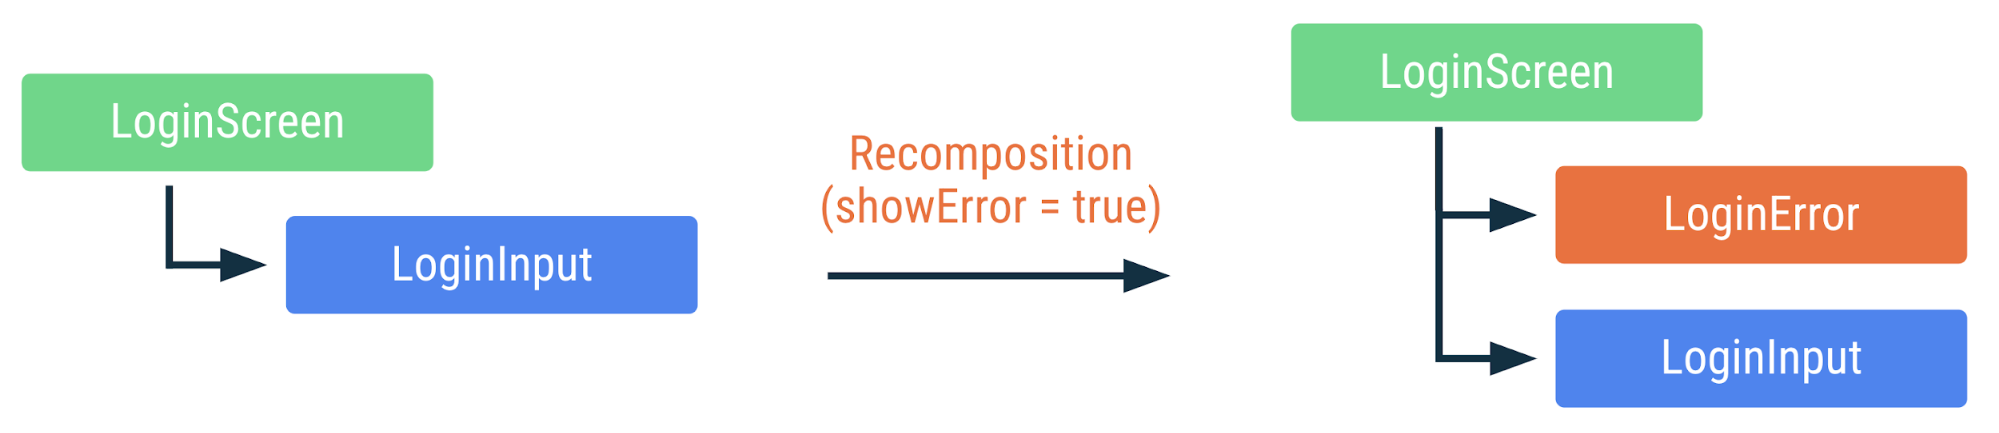 展示 showError 标志更改为 true 时如何重组上述代码的示意图。添加了 LoginError 可组合项，但其他可组合项不会被重组。